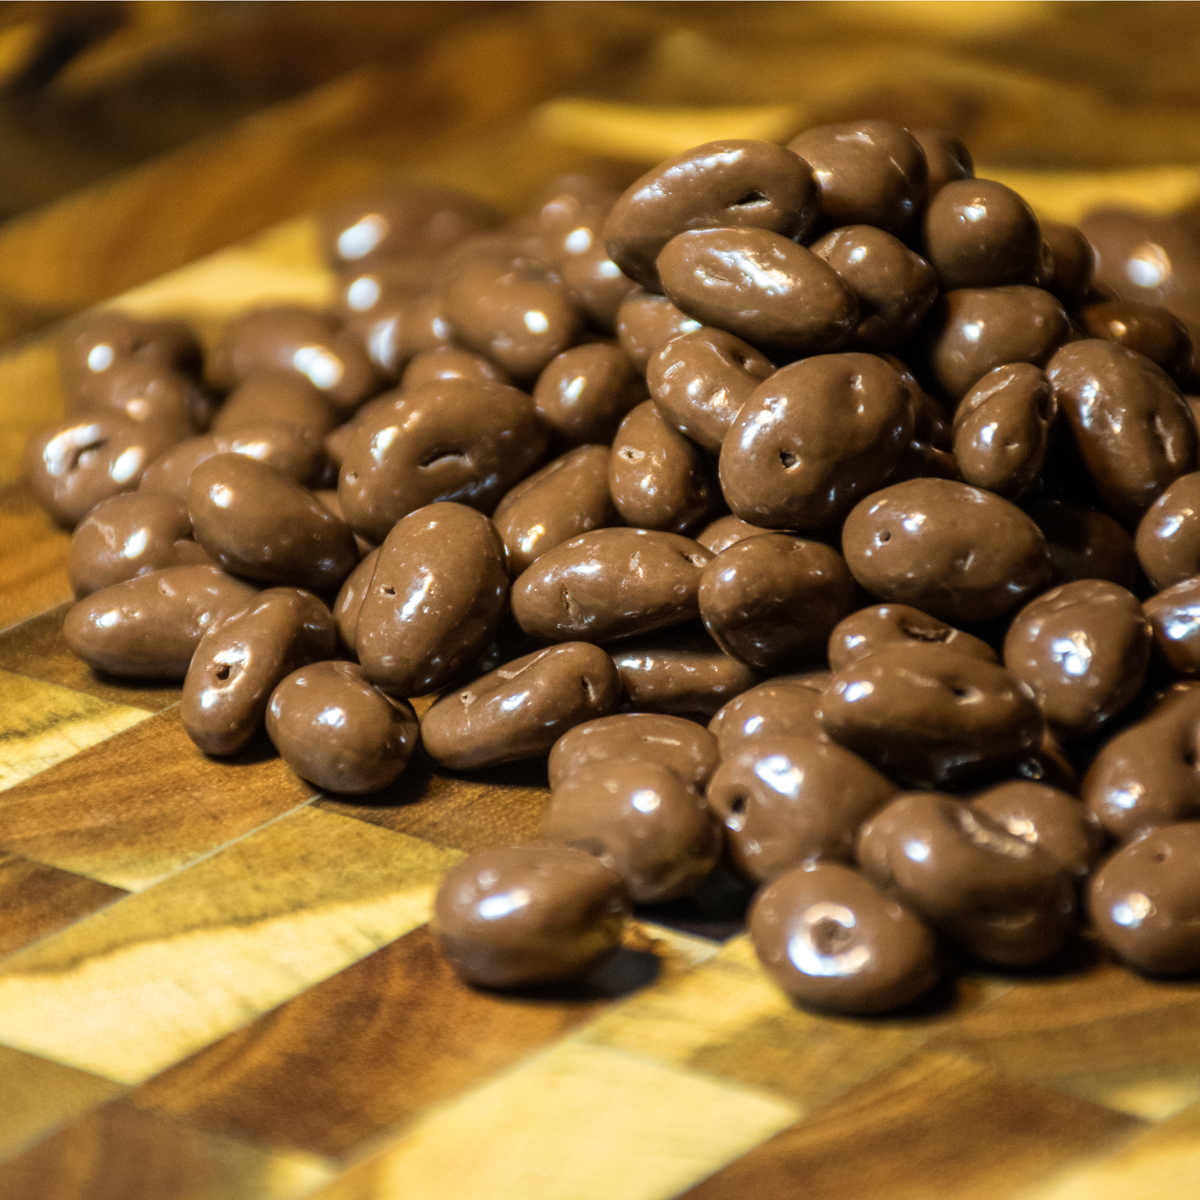 Homemade Chocolate-Covered Espresso Beans